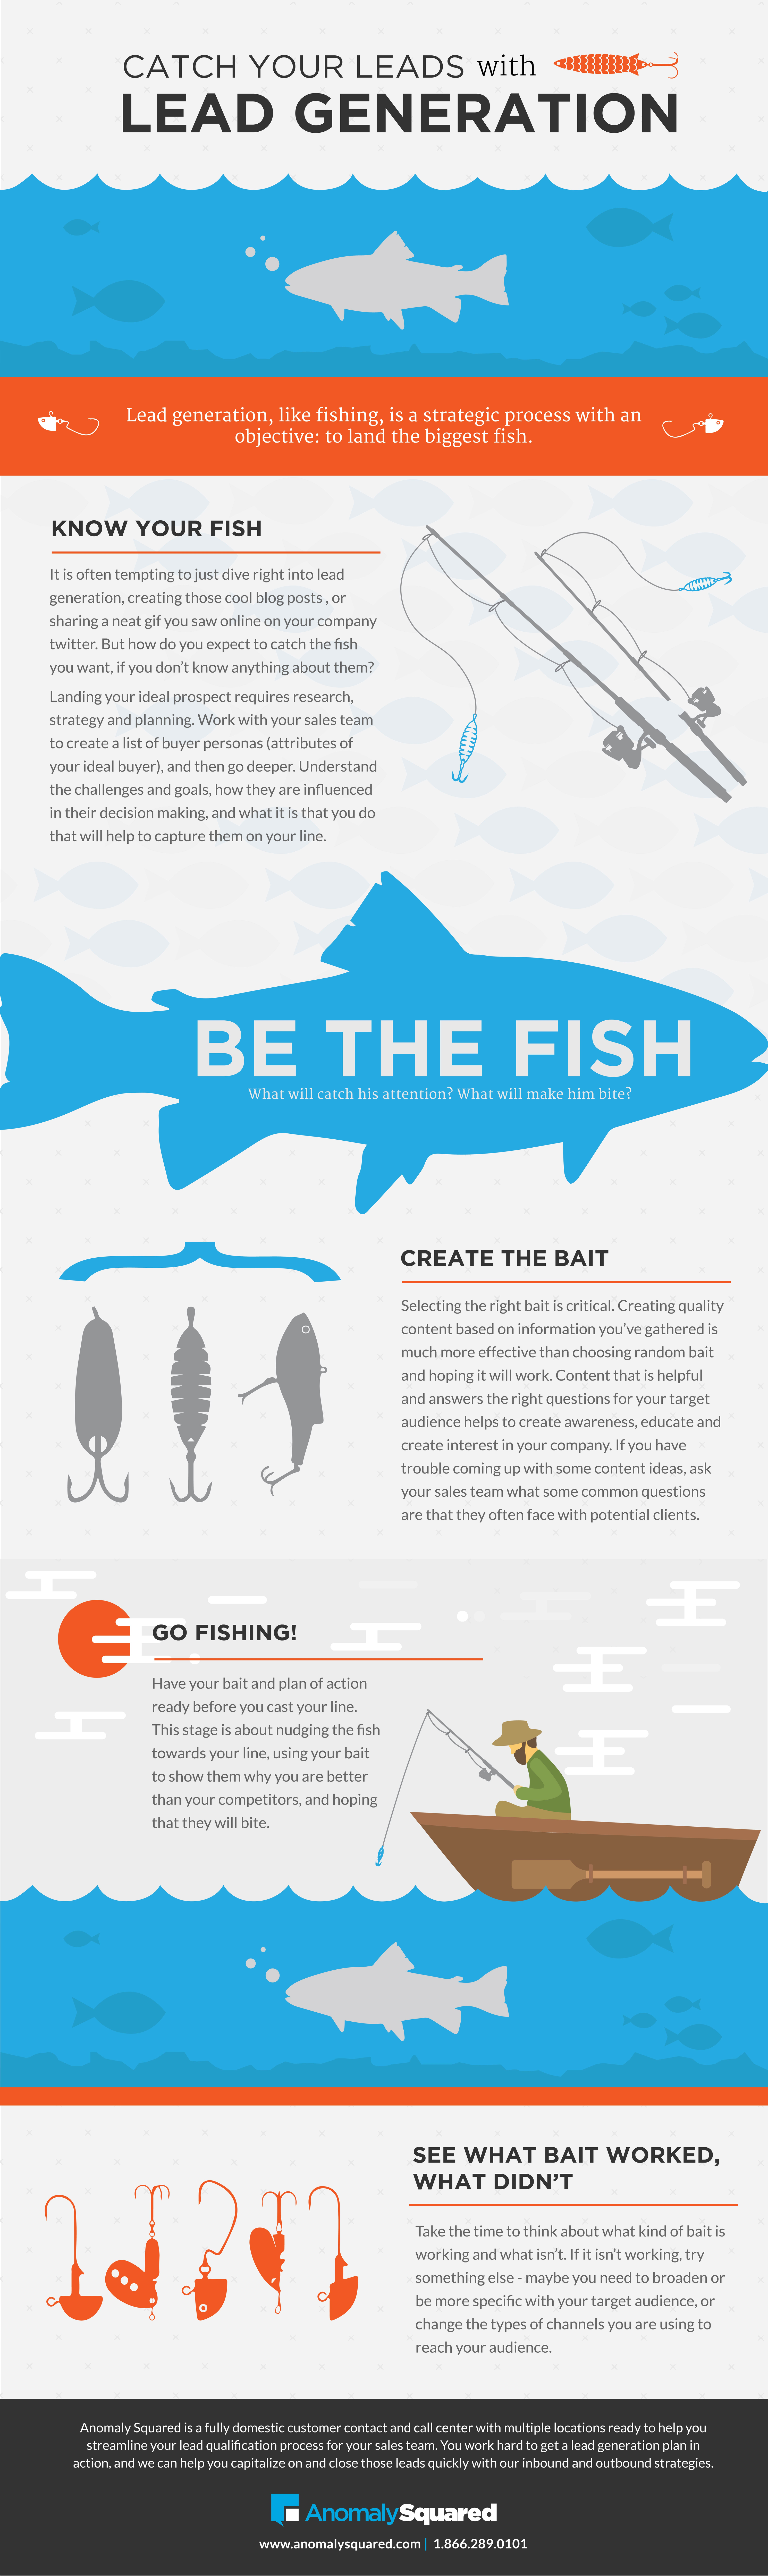 LeadGen_Fishing_Infographic-01.jpg